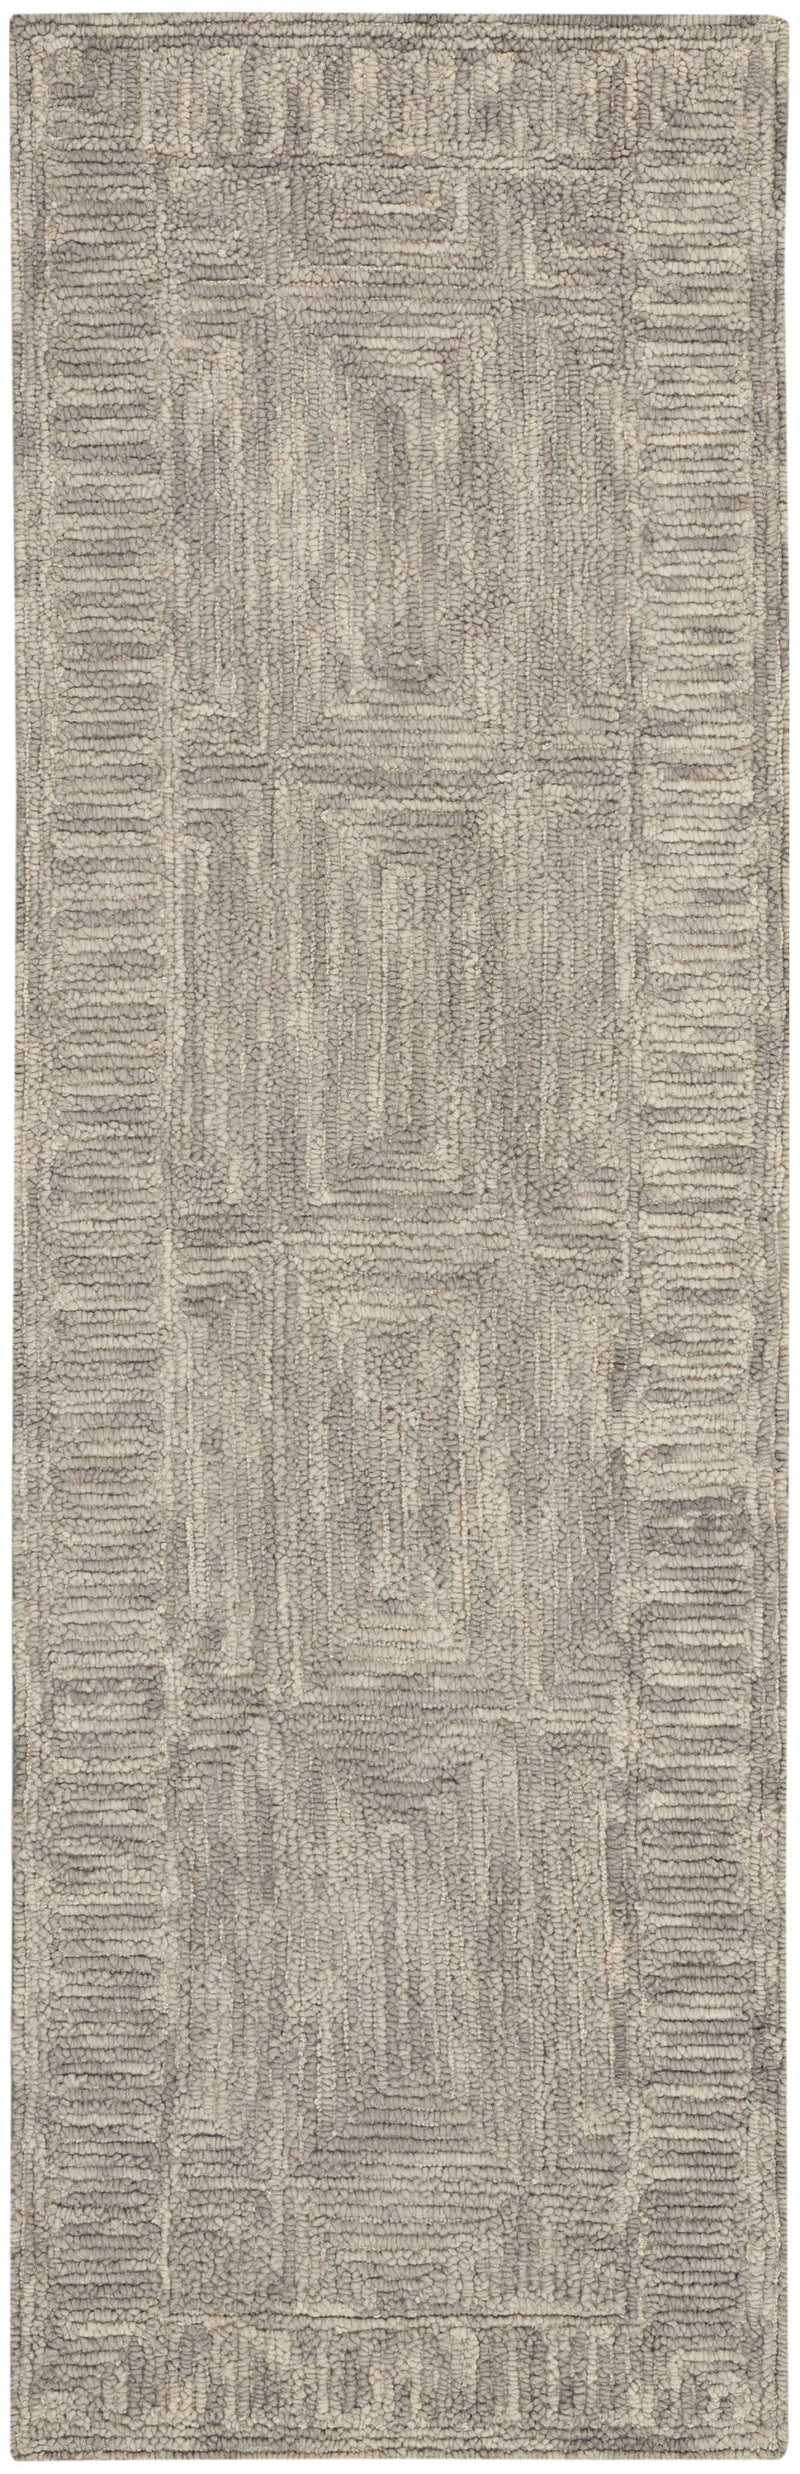 media image for colorado handmade grey rug by nourison 99446786685 redo 2 281